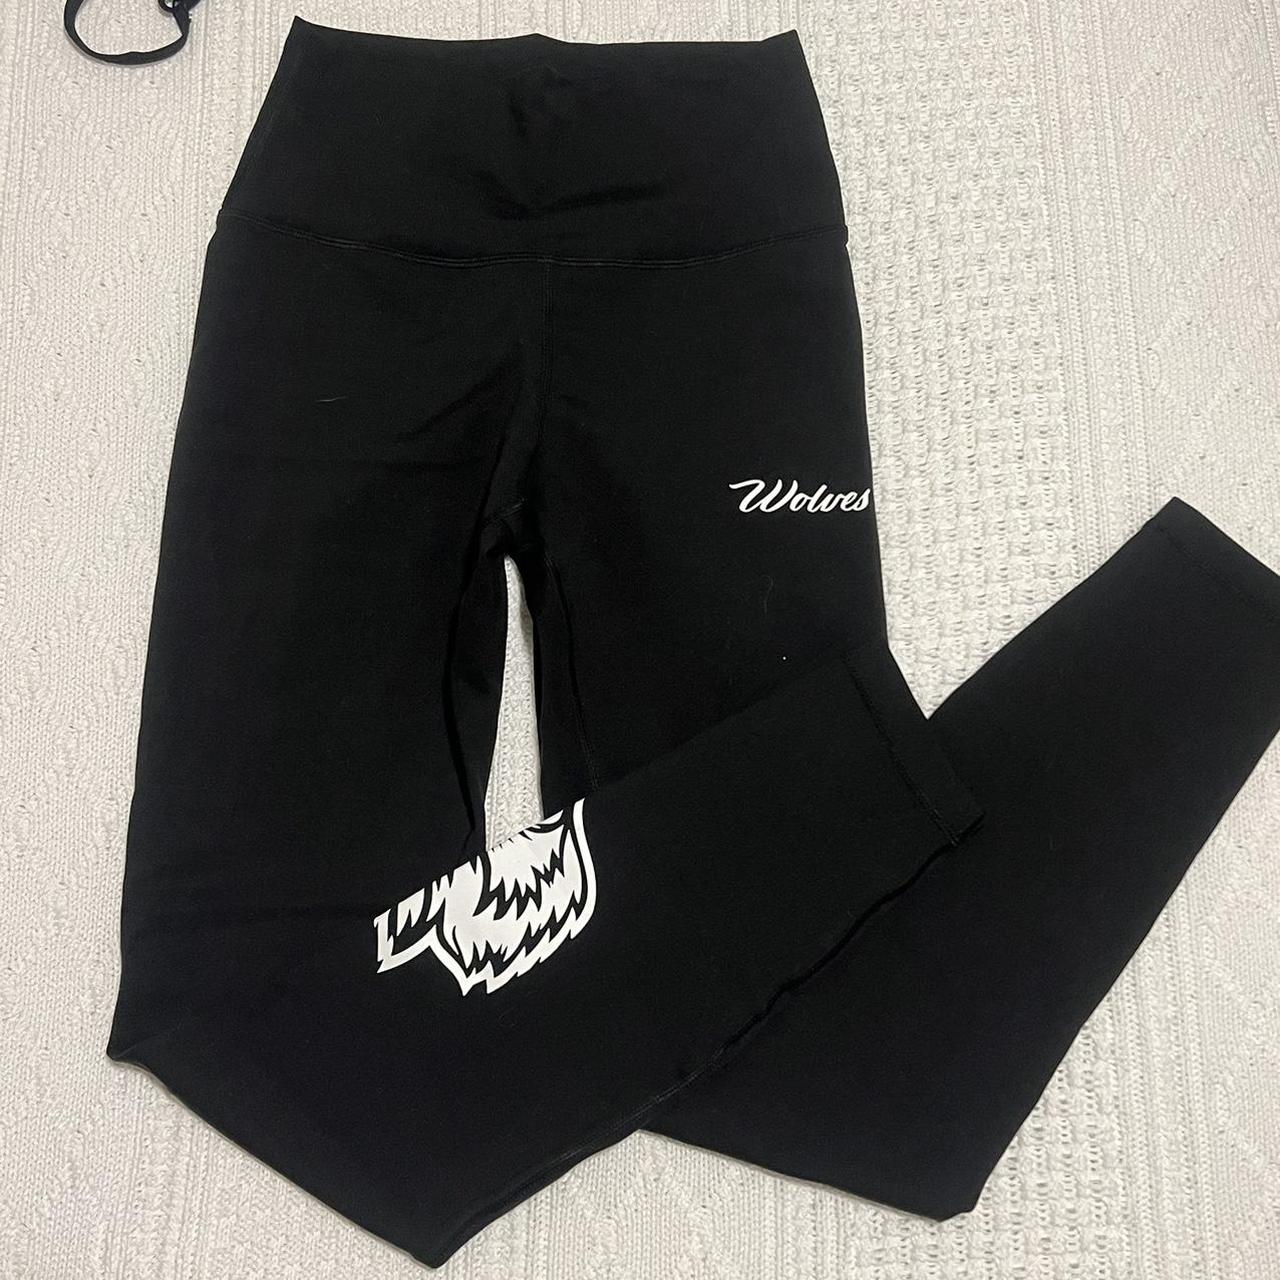 Darc Sport SHE black leggings Sold out online - Depop